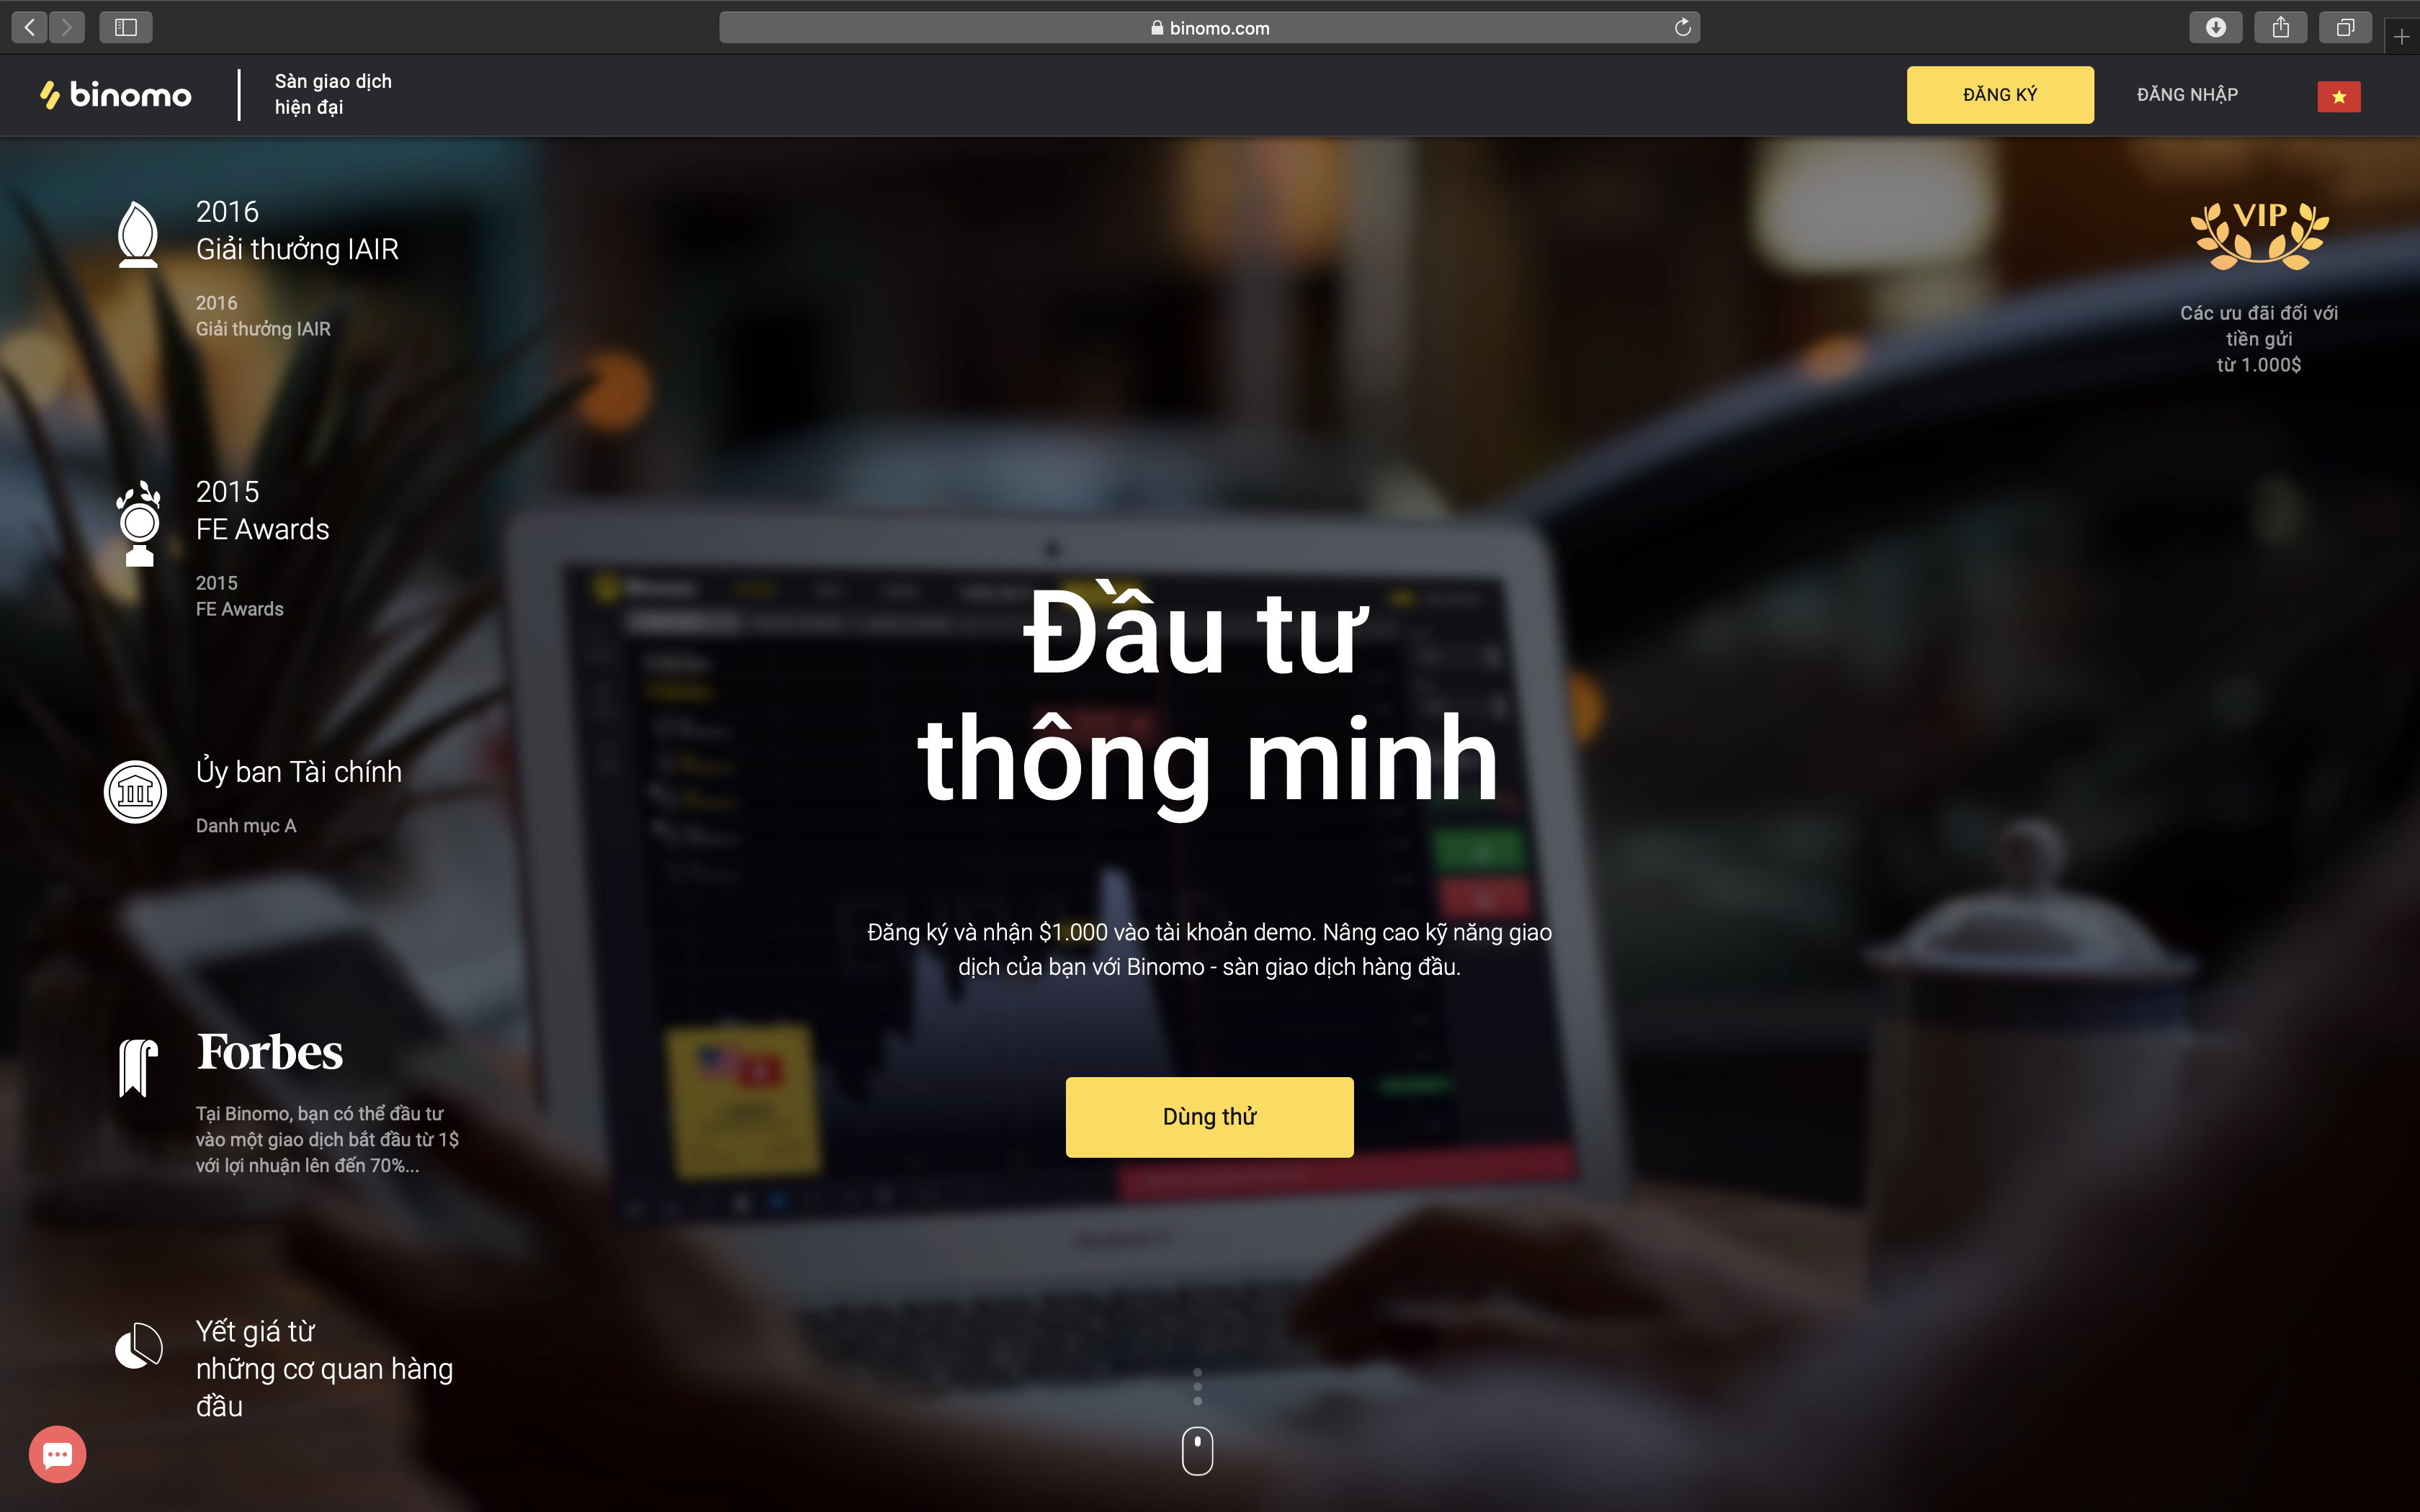 Youtube tiếp tay cho Binomo quảng cáo lừa đảo tại Việt Nam